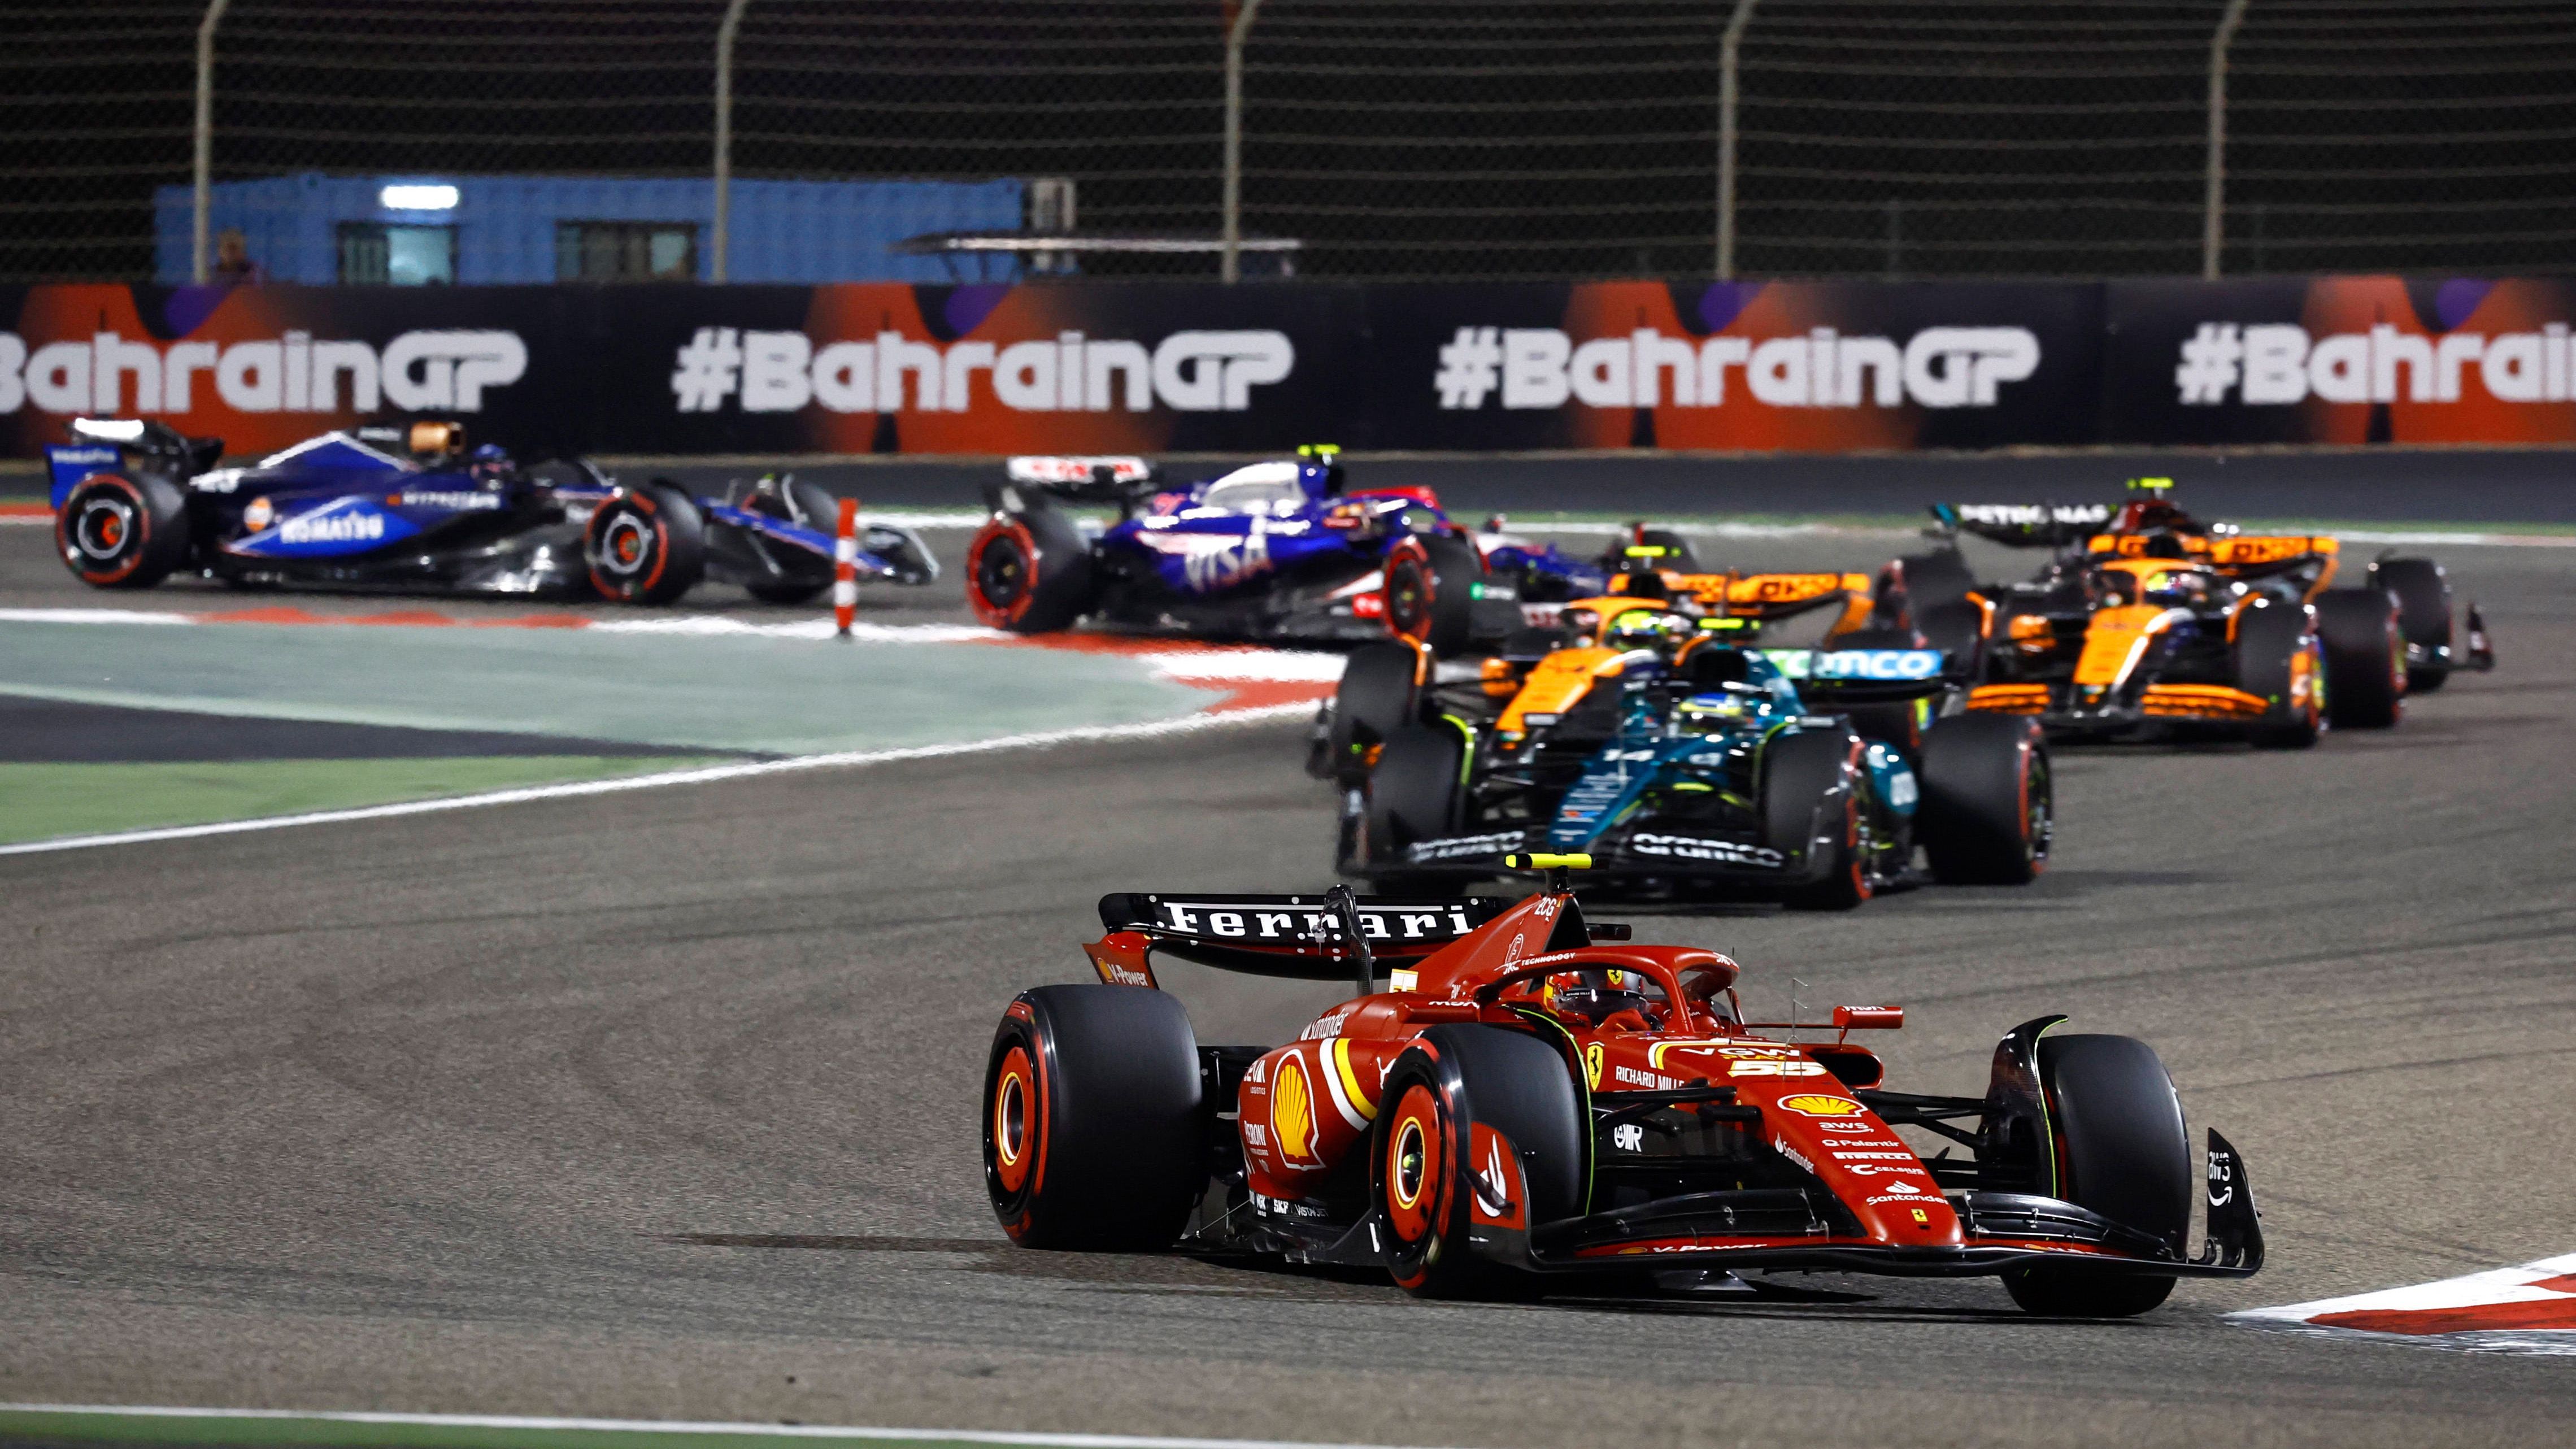 <strong>Verlierer: Die restlichen Teams der Formel 1</strong> <br>Wer auf eine Änderung der Rangfolge auf der Strecke gehofft hatte, wurde in Bahrain bitter enttäuscht. Für Ferrari, Mercedes, McLaren und auch Aston Martin könnte es im Schatten von Red Bull eine lange Saison werden. Der einzige Mutmacher: Das Jahr ist noch lang, mit Hilfe von Weiterentwicklungen könnte der Abstand auf die Spitze verkürzt werden.